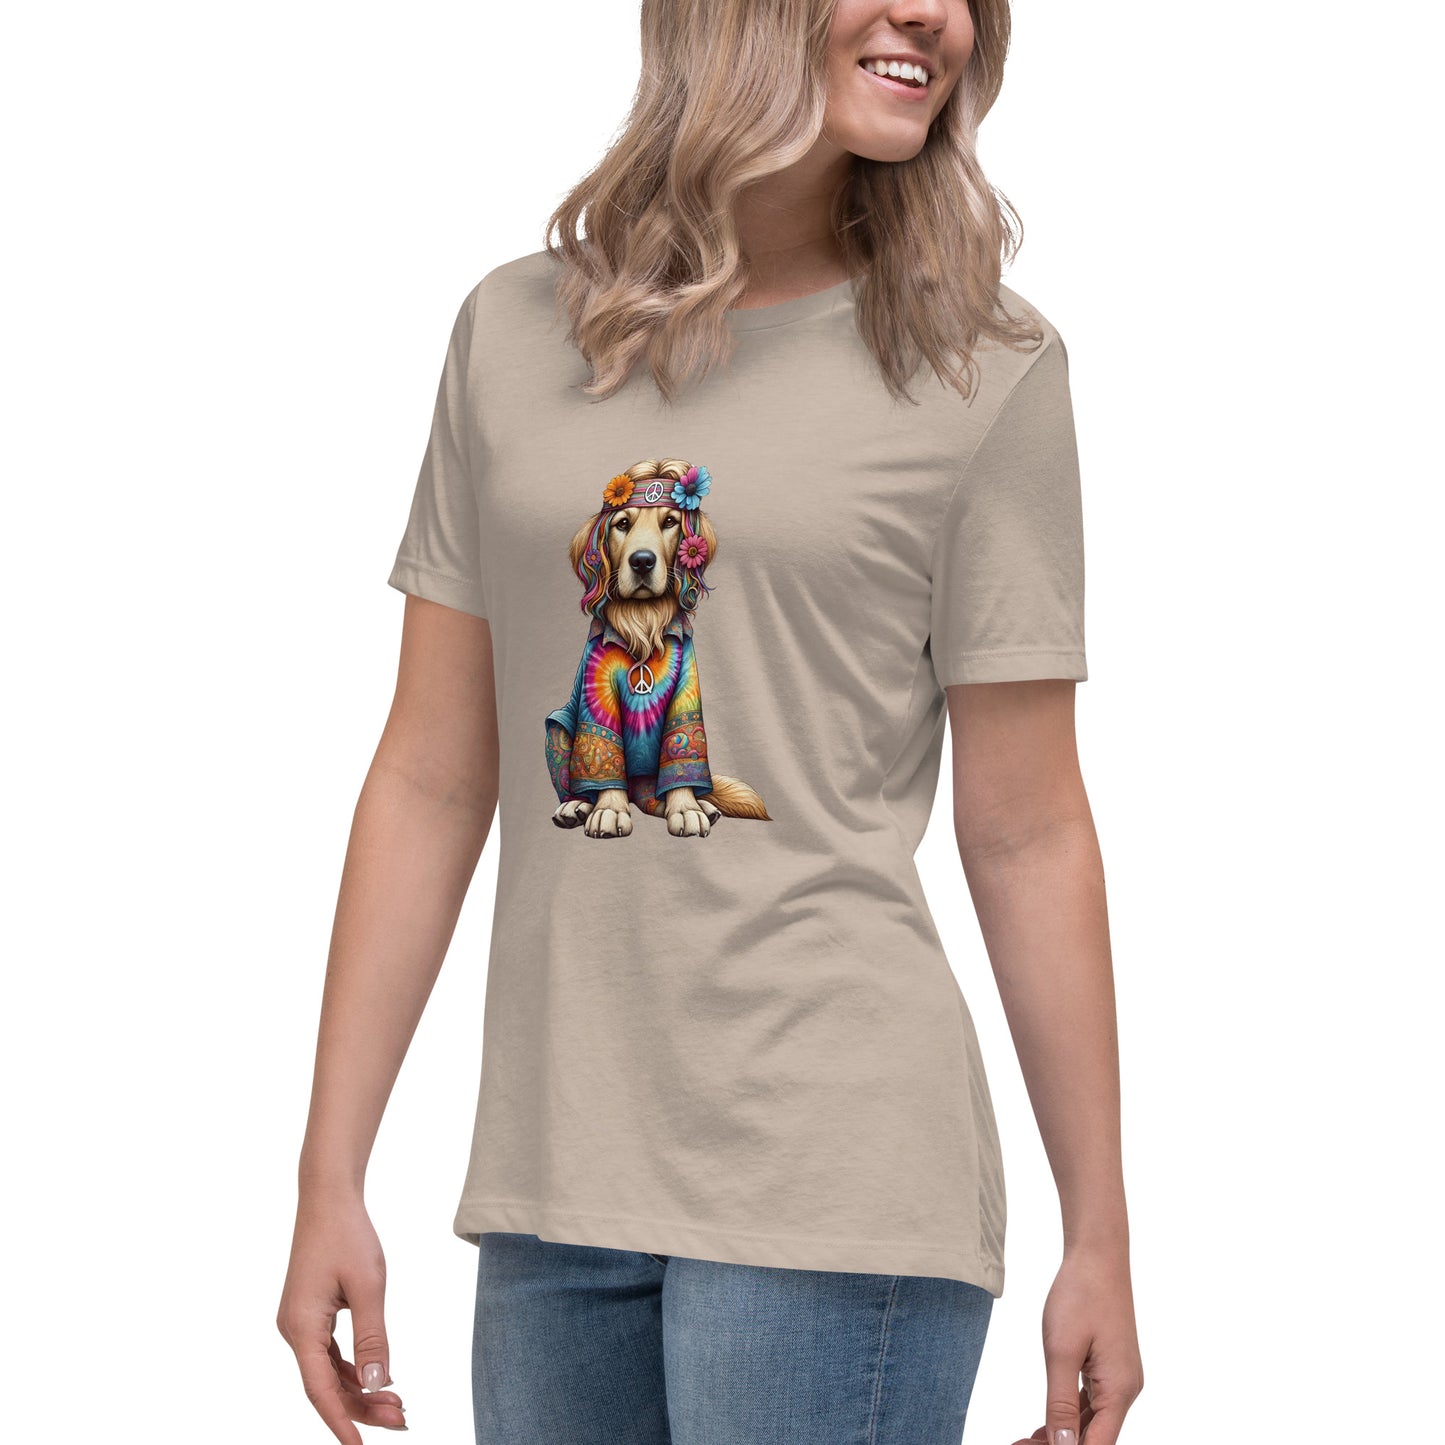 Cuddlebug Golden Retriever Women's T-Shirt